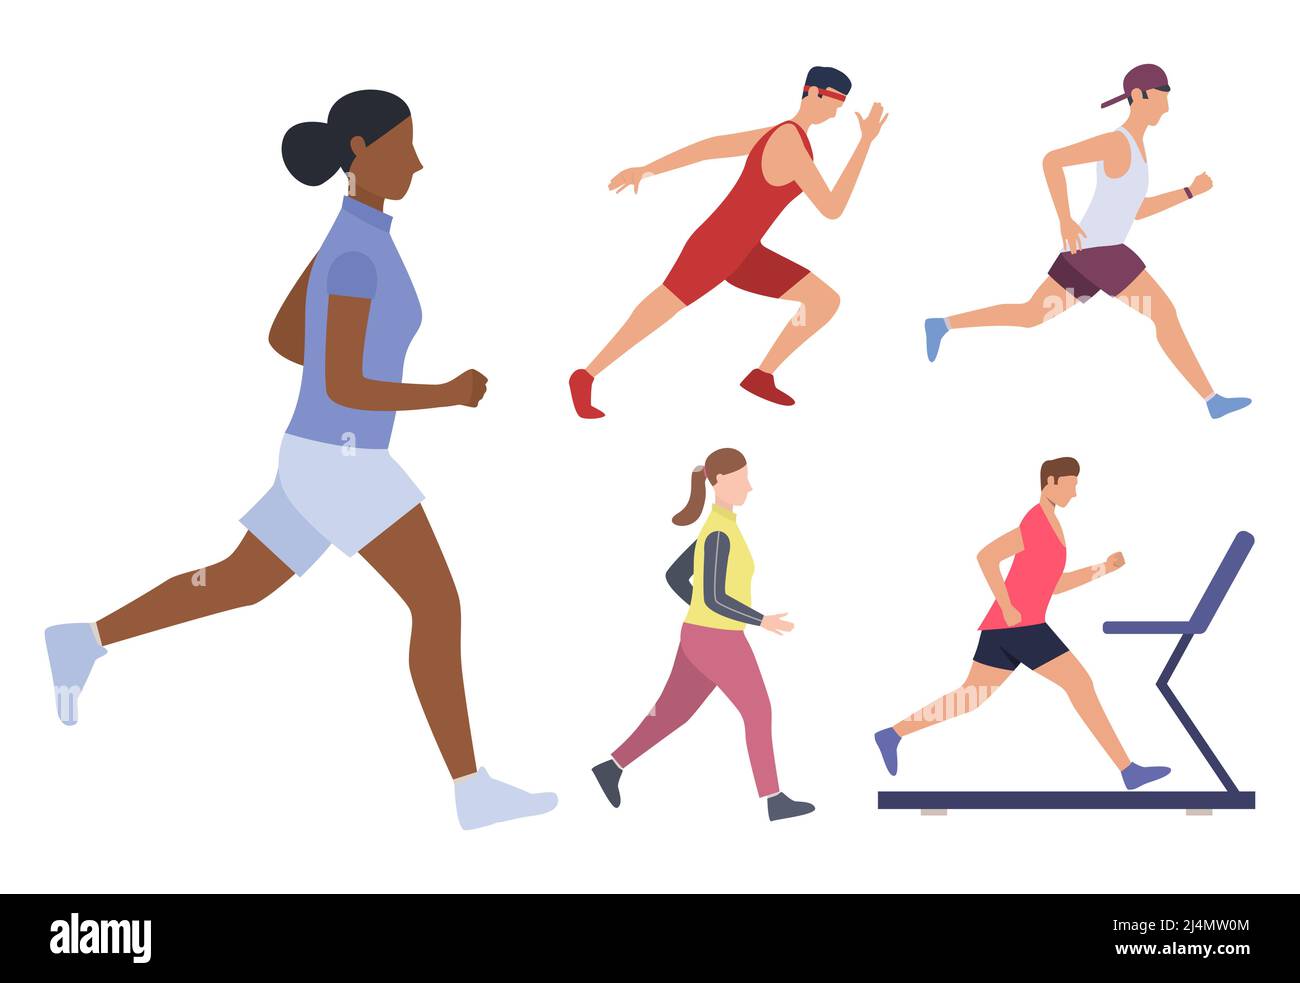 Set von männlichen und weiblichen Läufern. Eine Gruppe von Männern und Frauen läuft, joggt und trainiert auf Laufbändern. Sportkonzept. Vektorgrafik kann für verwendet werden Stock Vektor